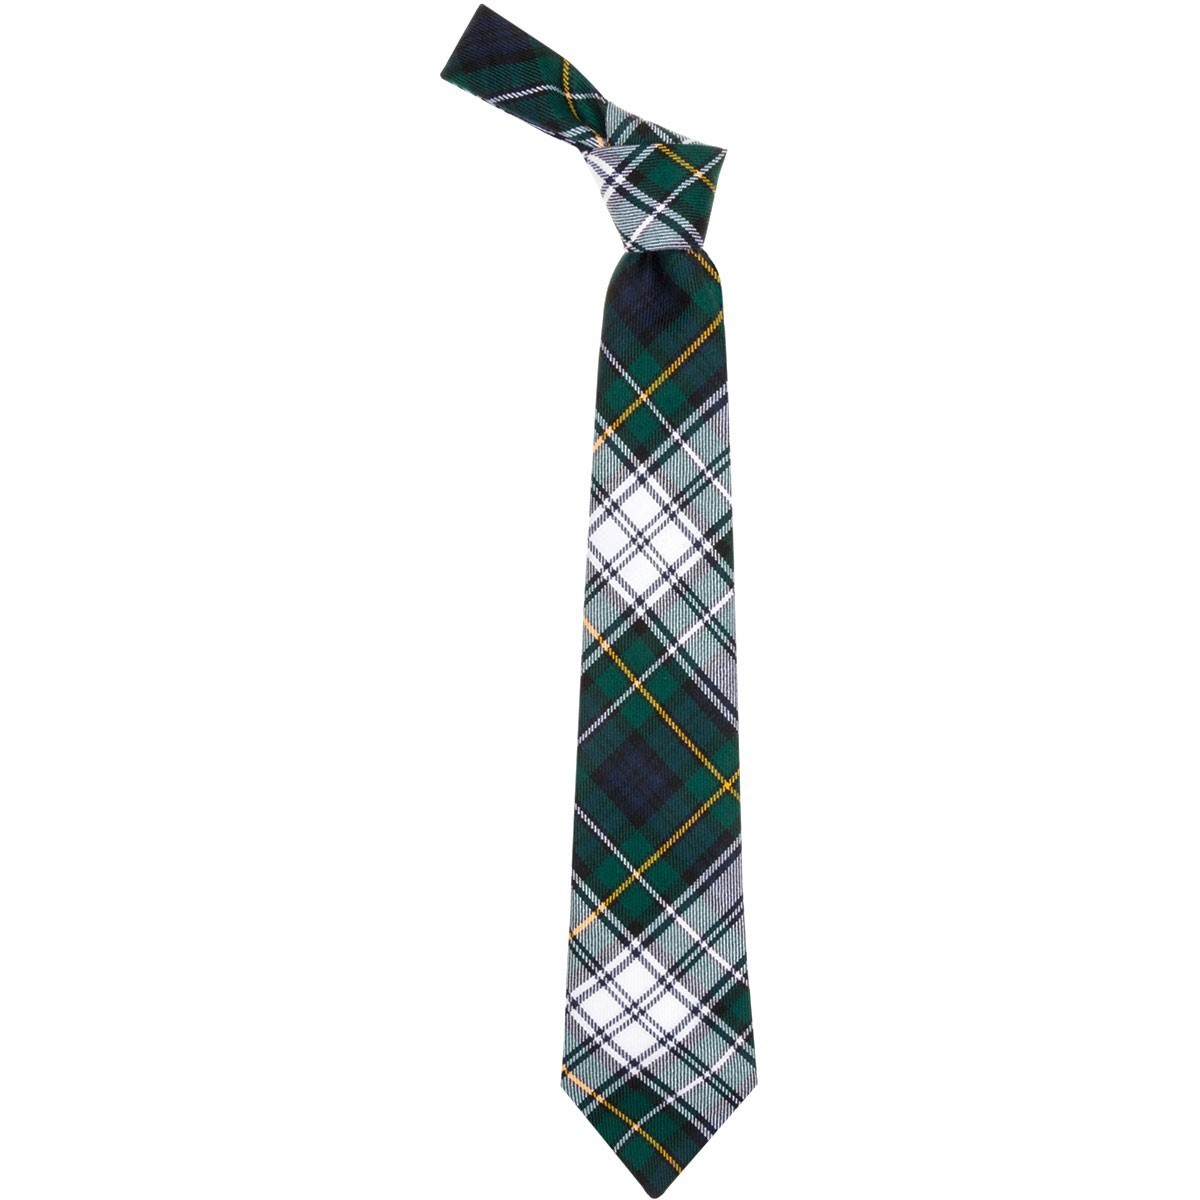 Campbell Dress Modern Tartan Tie